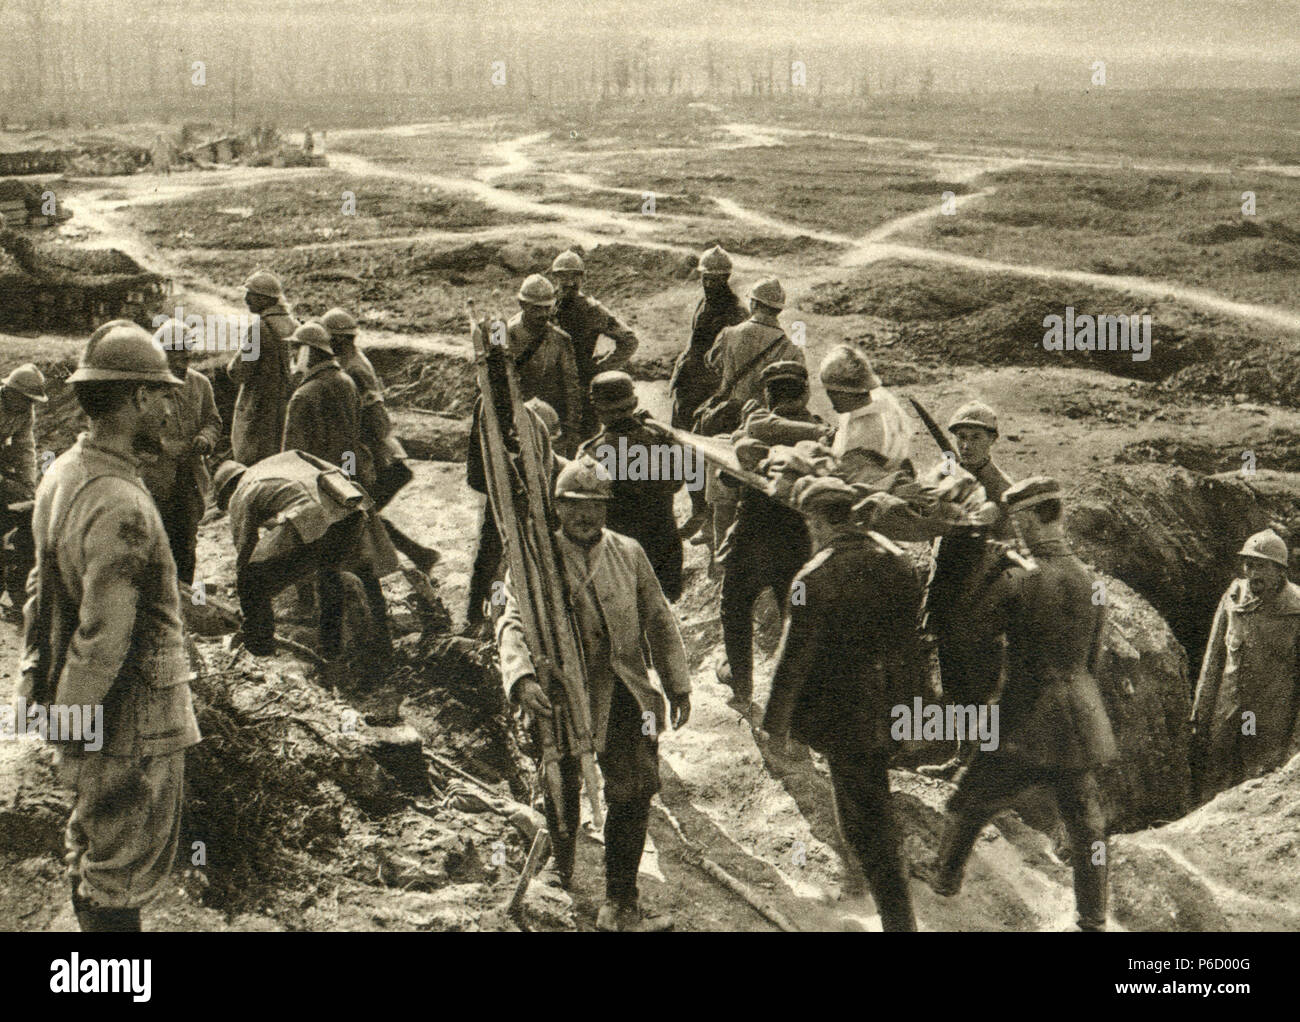 La première guerre mondiale, soldats français, des blessés, ww1, la première guerre mondiale, la première guerre mondiale Banque D'Images